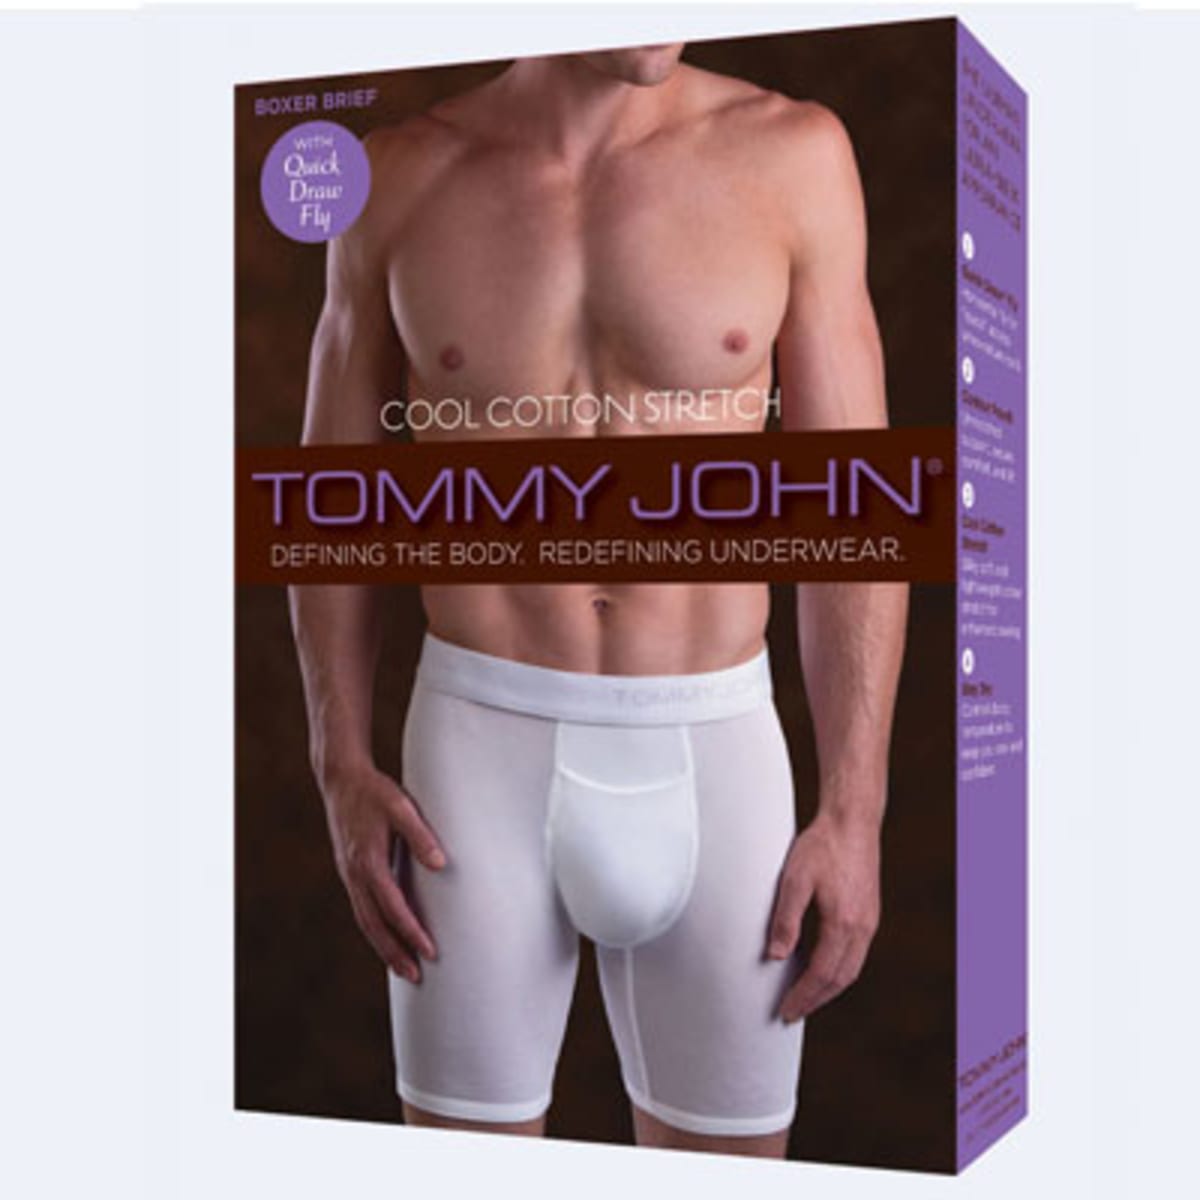 buy tommy john underwear